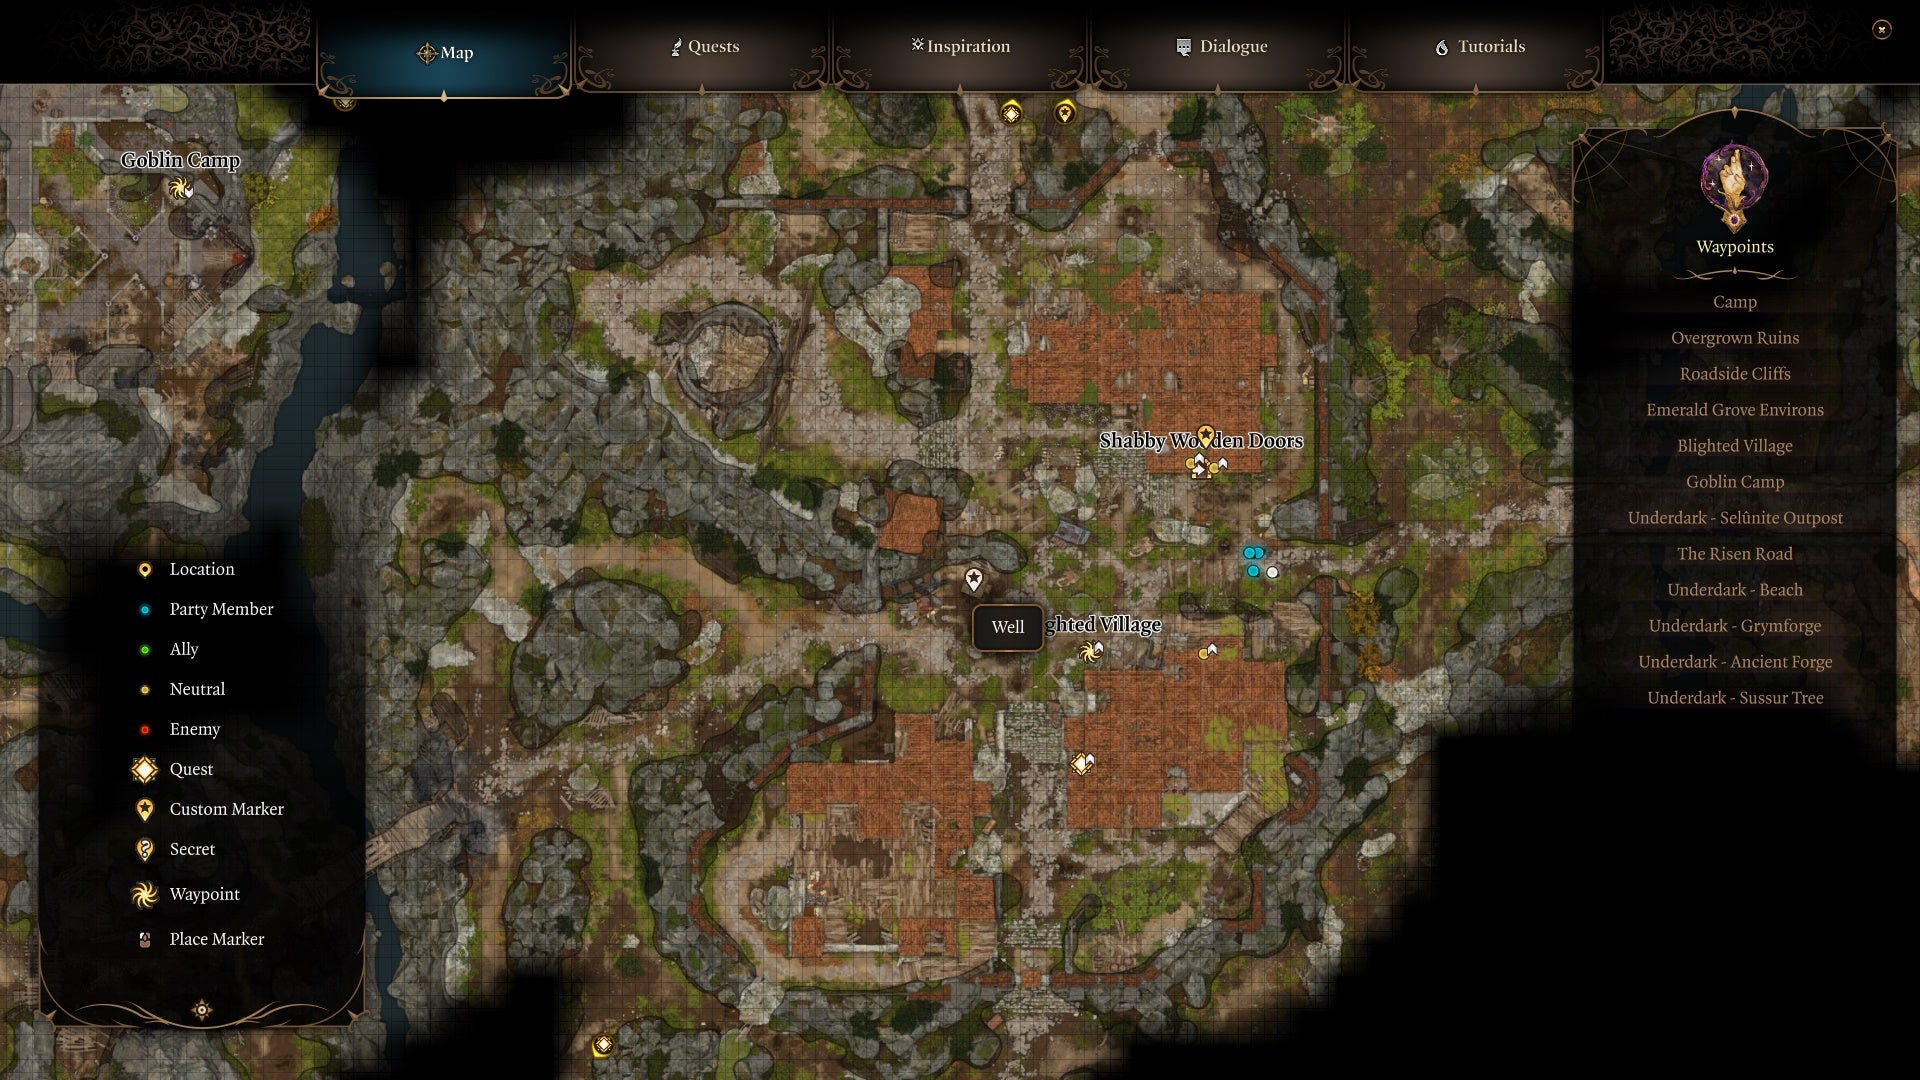 Ubicación en el mapa que muestra un pozo en el pueblo arruinado.